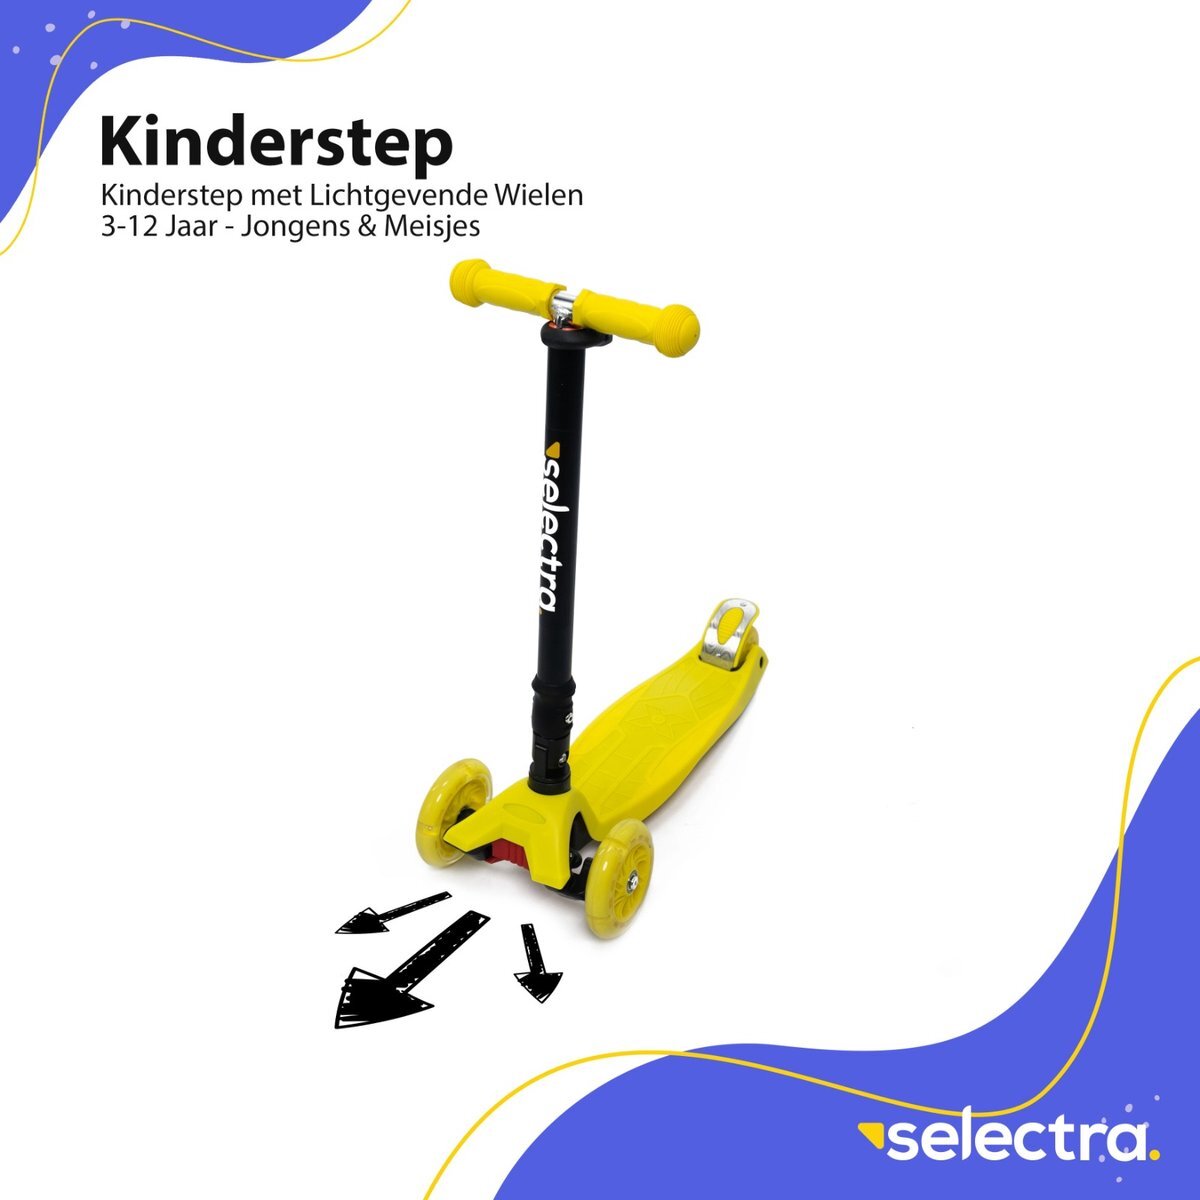 Grace uitglijden patroon Selectra kinderstep met 4 lichtgevende wielen – Kick step voor kinderen van  3 t/m 9 jaar – Led scooter met click and ride functie - Geel buiten- speelgoed kopen? | Kieskeurig.nl | helpt je kiezen